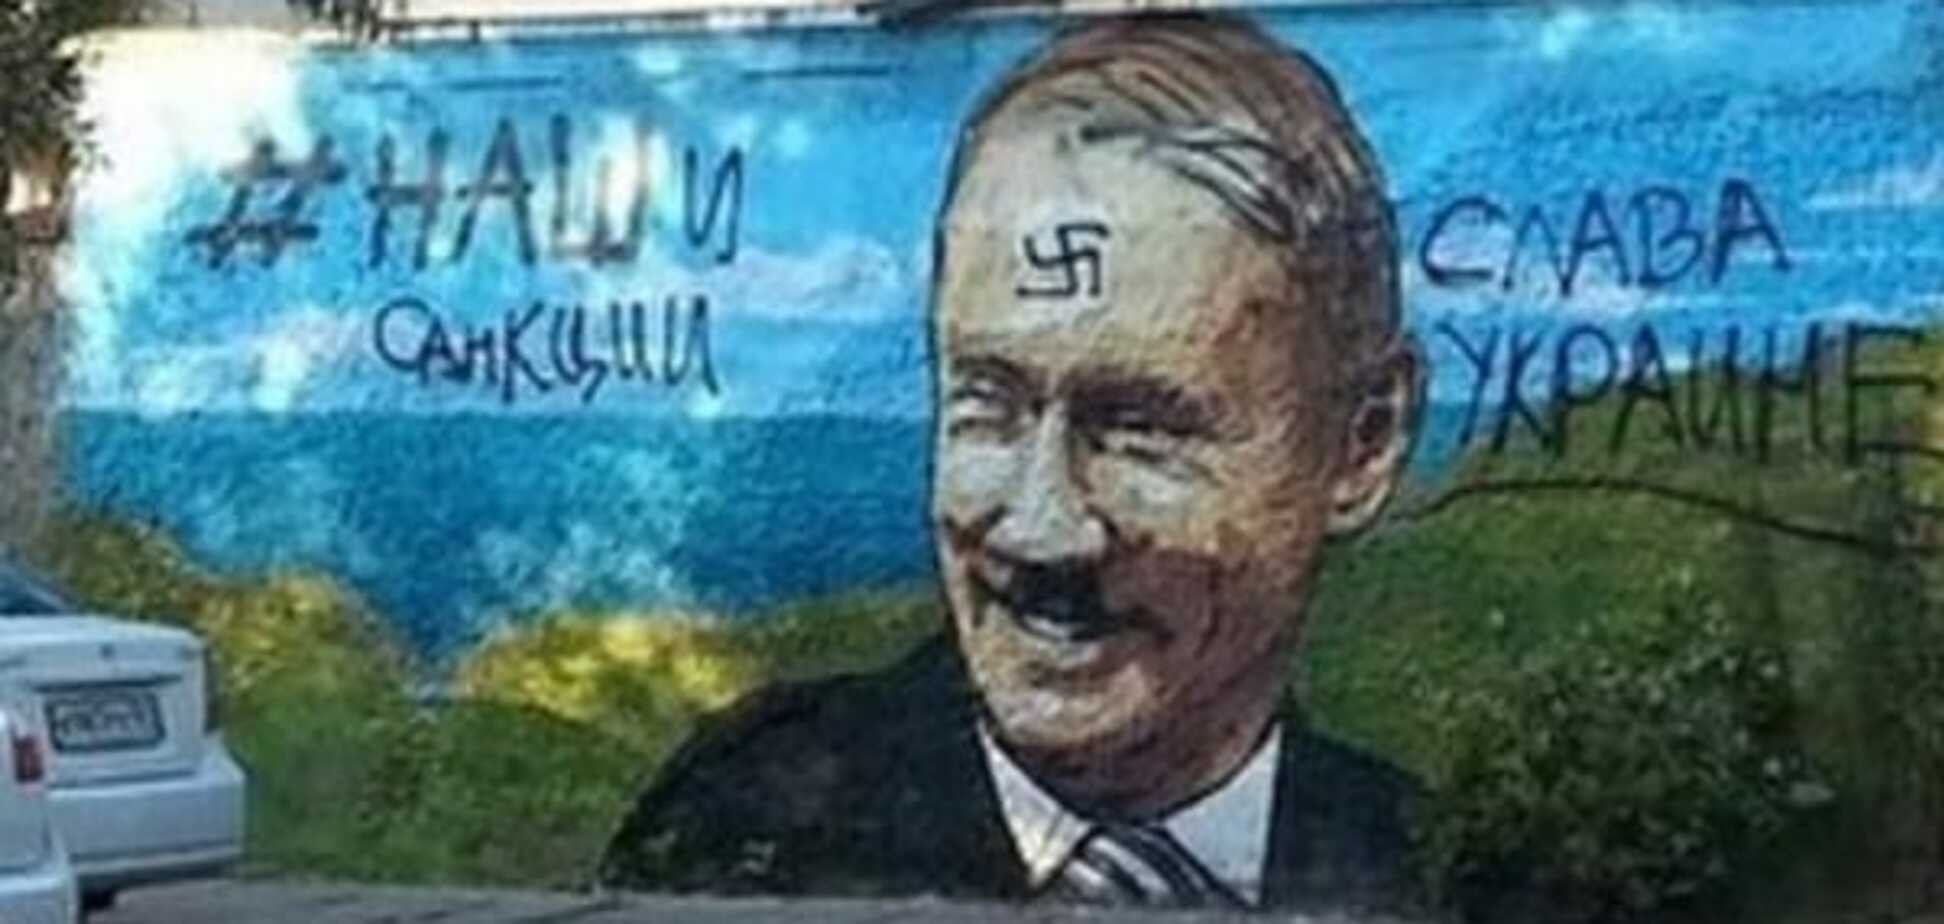 'Х**ло, пошел вон': в Крыму объявили рискованный 'конкурс' для патриотов. Фоторепортаж